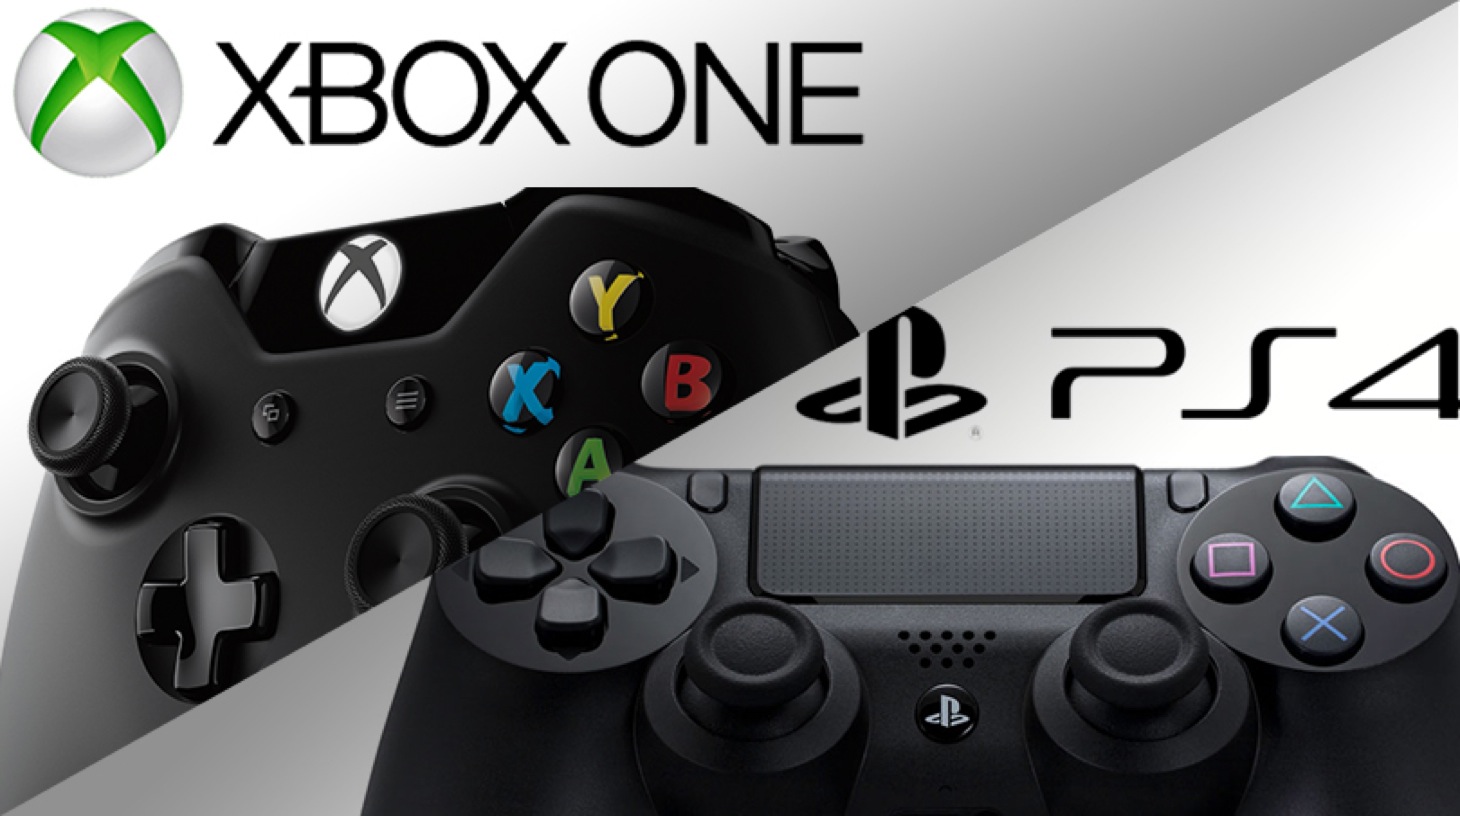 آمار جدید فروش کنسول ها - فروش Xbox One در ماه نوامبر در آمریکا و انگلستان از PS4 بیشتر بوده است | گیمفا